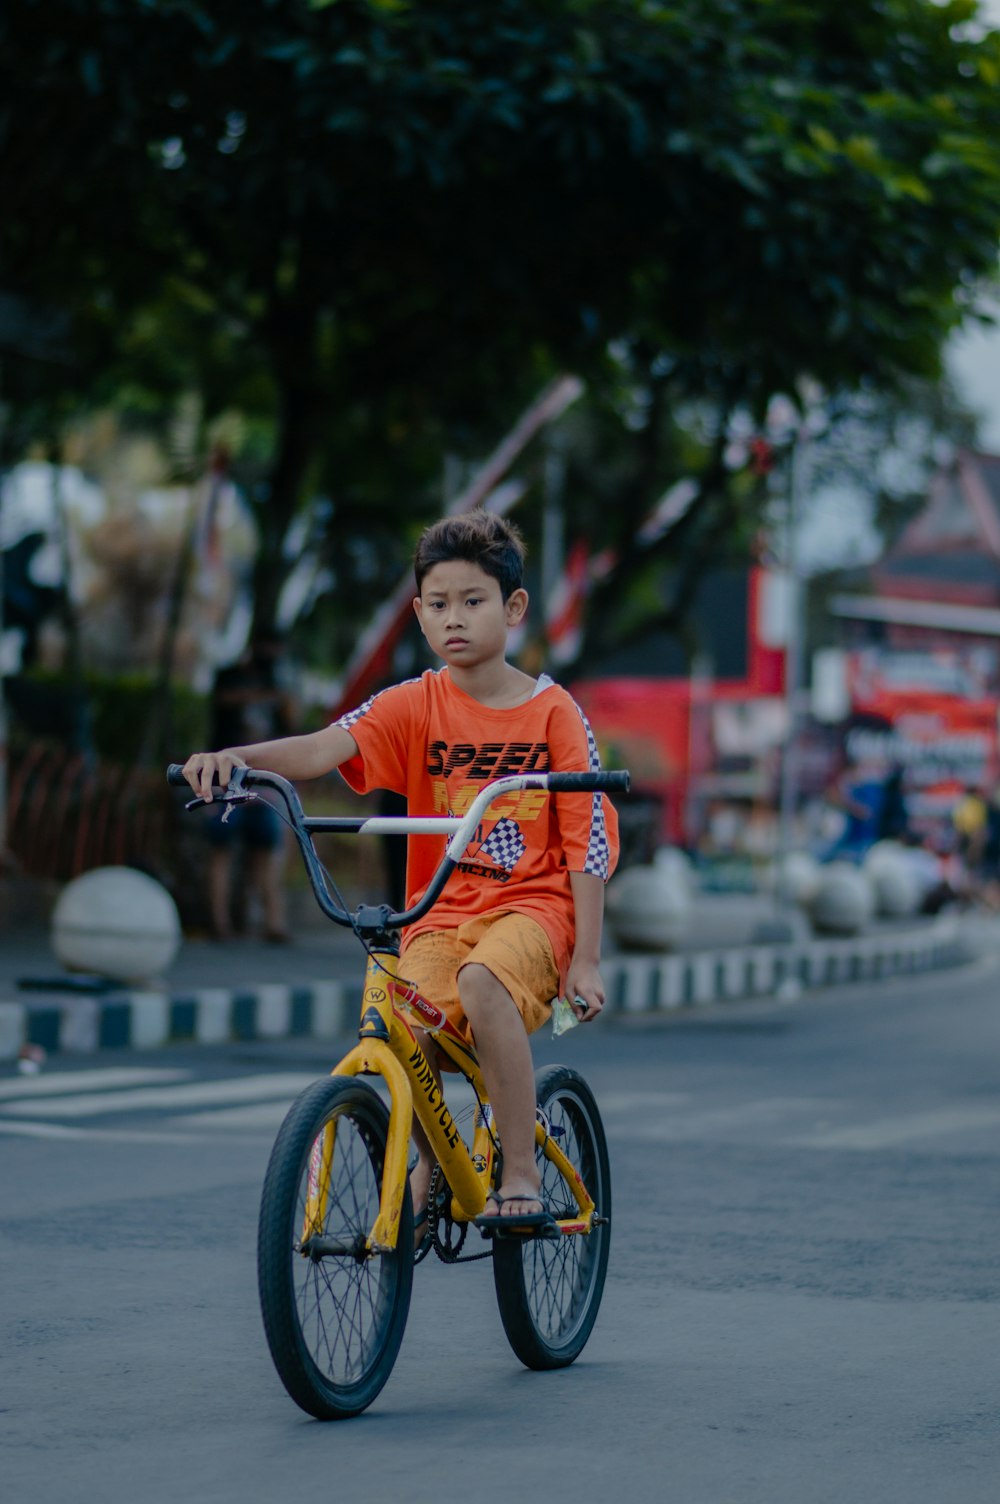 a young boy riding a bike down a street